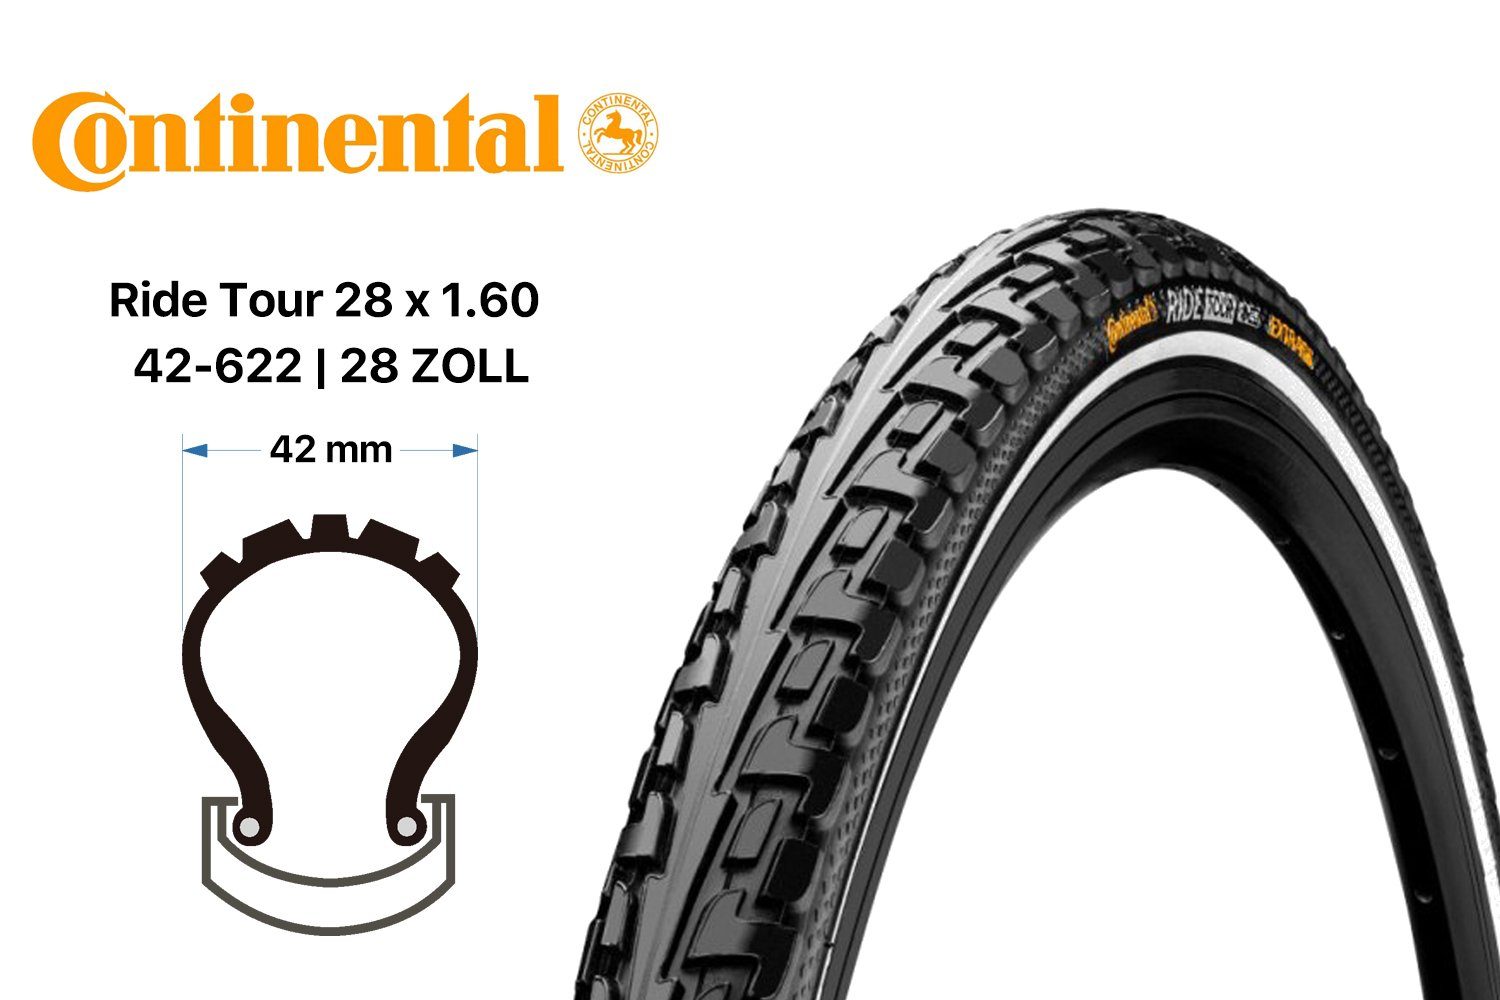 CONTINENTAL Fahrradreifen 28 TOUR Continental Mantel 42-622 Zoll Fahrrad RIDE schwarz Reifen